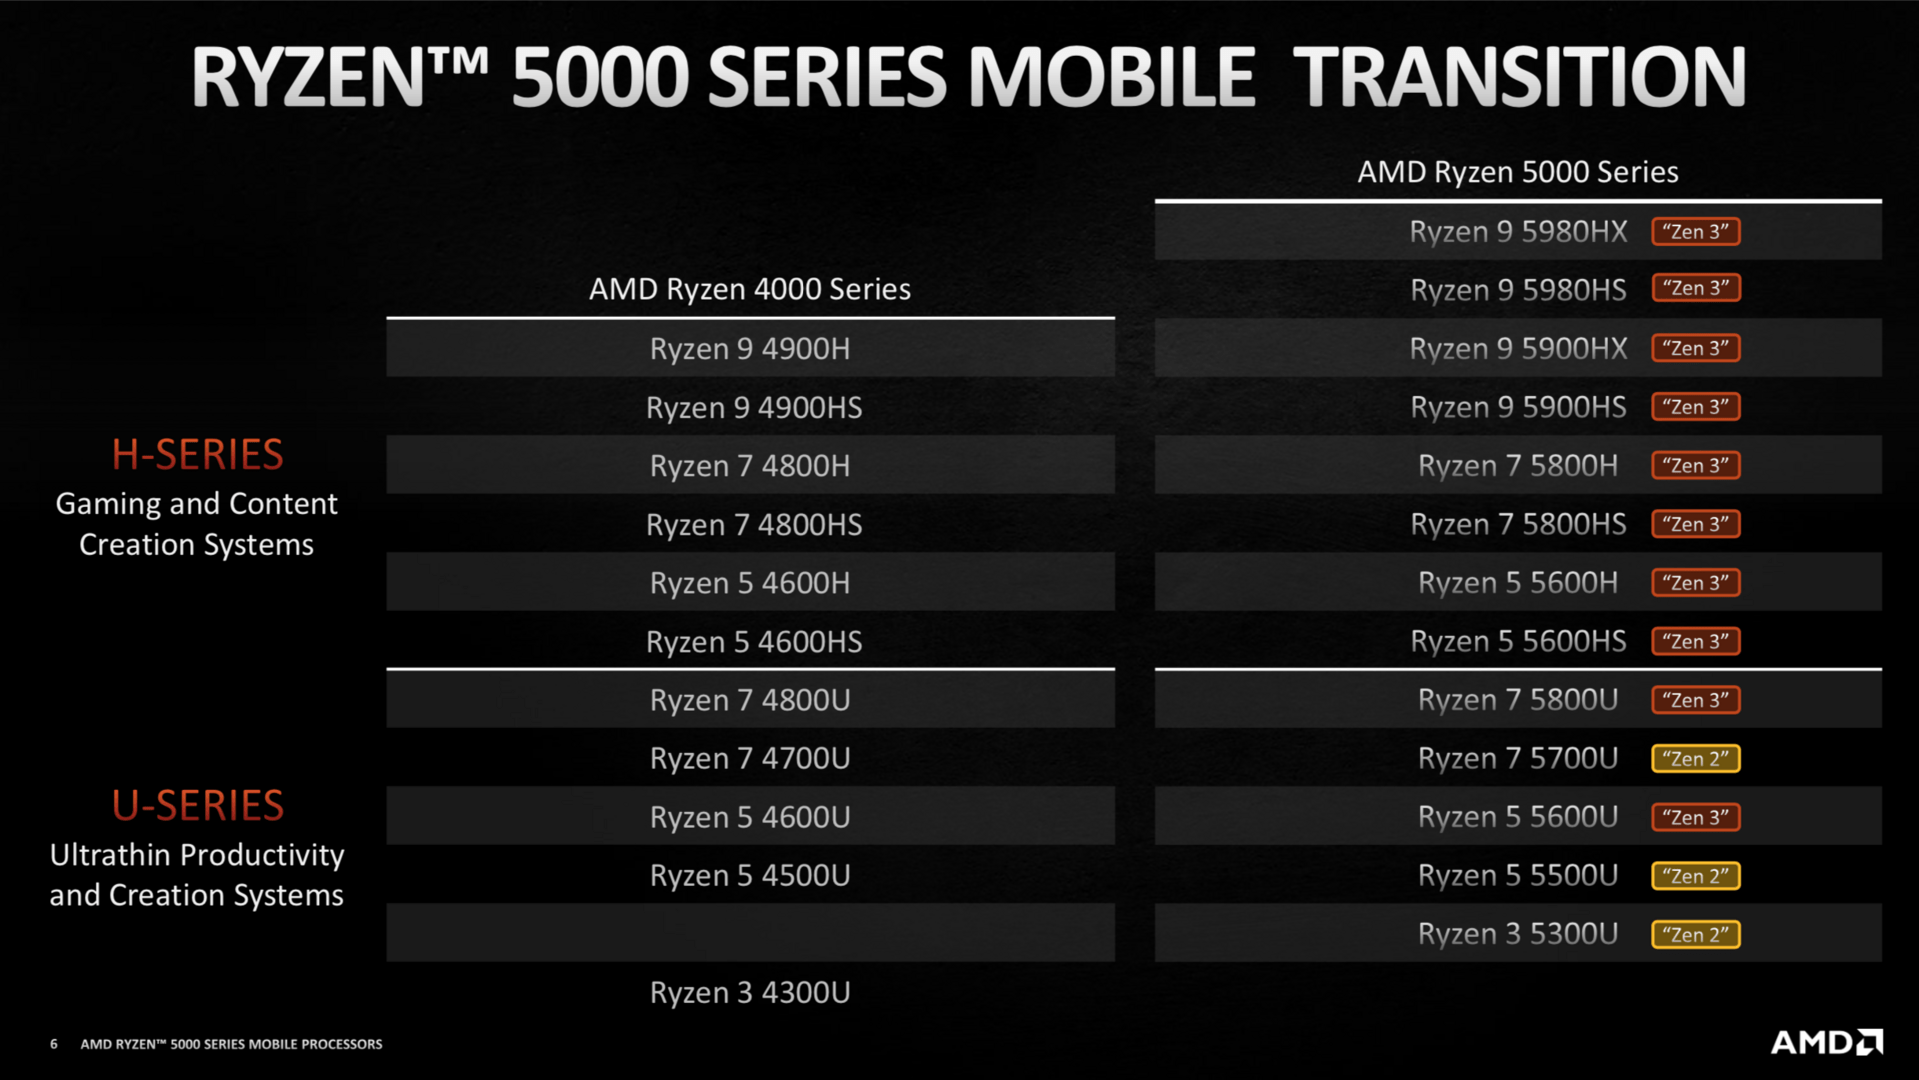 AMD Ryzen 5000 Mobile